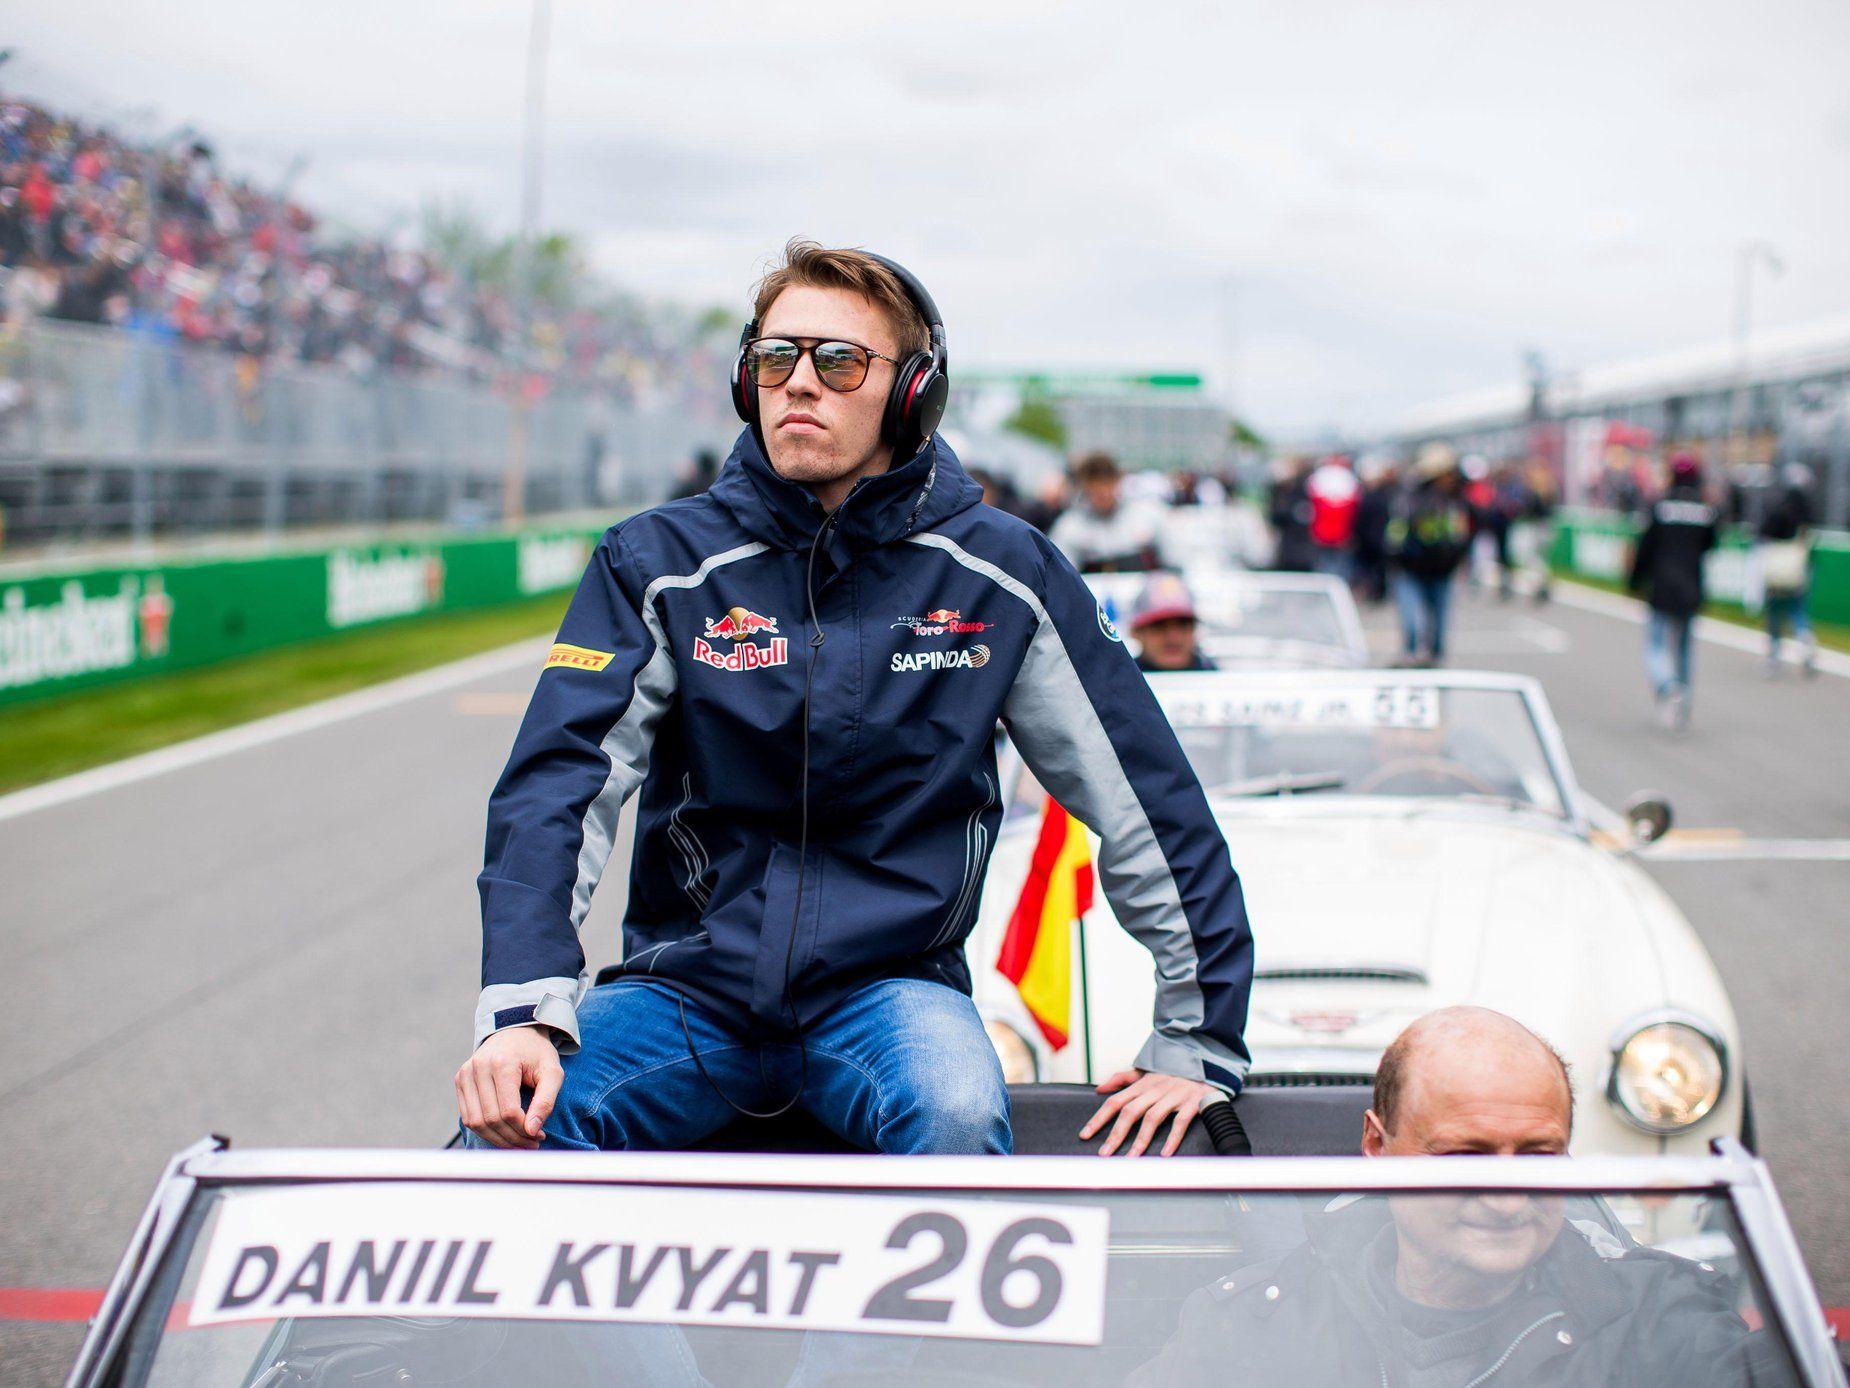 Daniil Kvyat, Carlos Sainz, track action, garage, team, pitlane